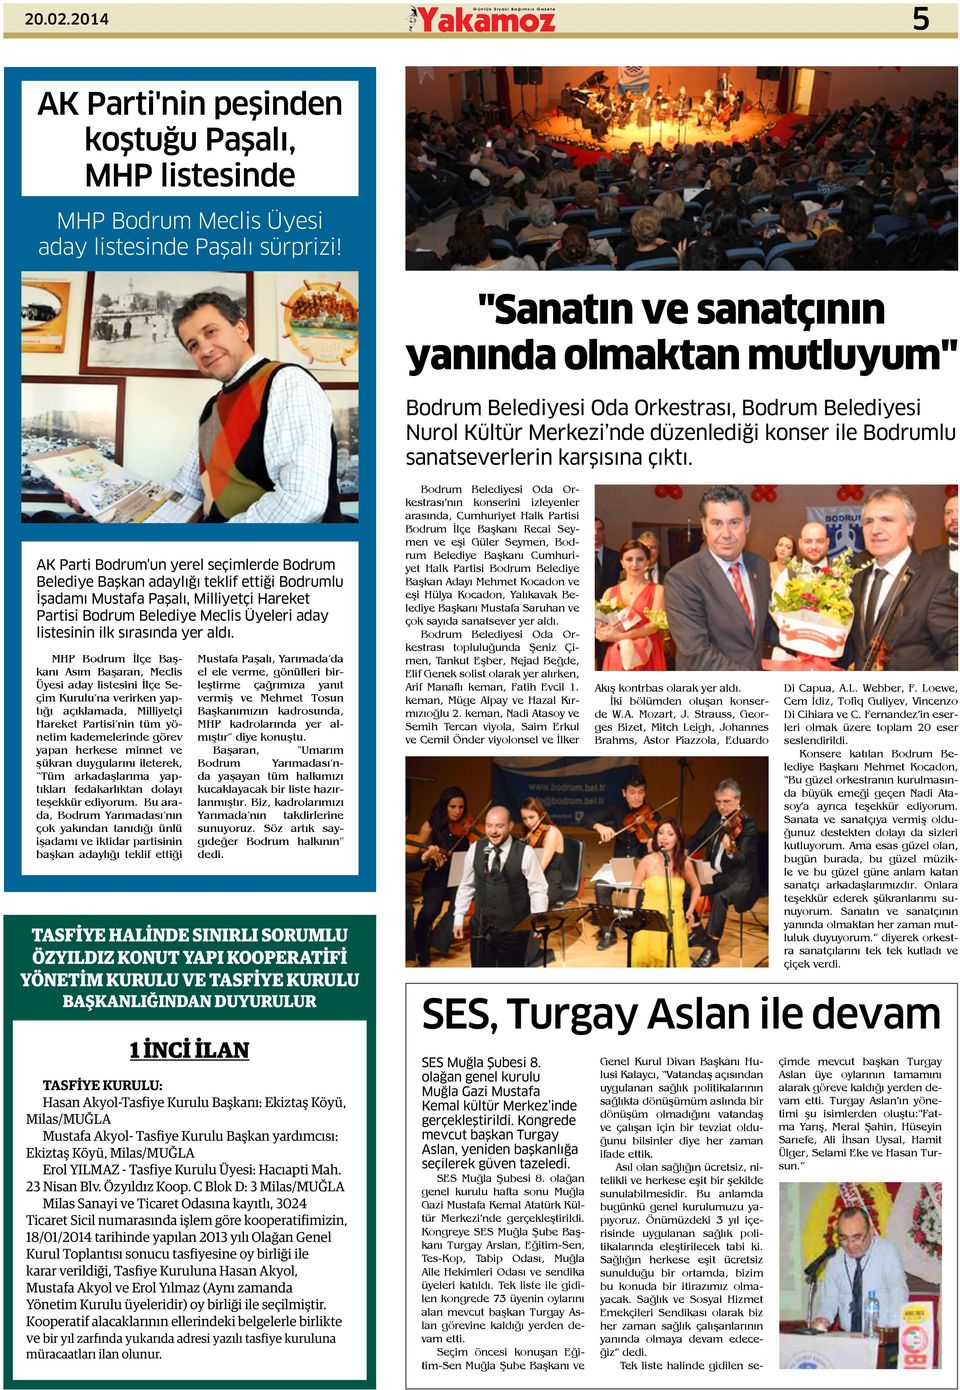 AK Parti Bodrum'un yerel seçimlerde Bodrum Belediye Başkan adaylığı teklif ettiği Bodrumlu İşadamı Mustafa Paşalı, Milliyetçi Hareket Partisi Bodrum Belediye Meclis Üyeleri aday listesinin ilk